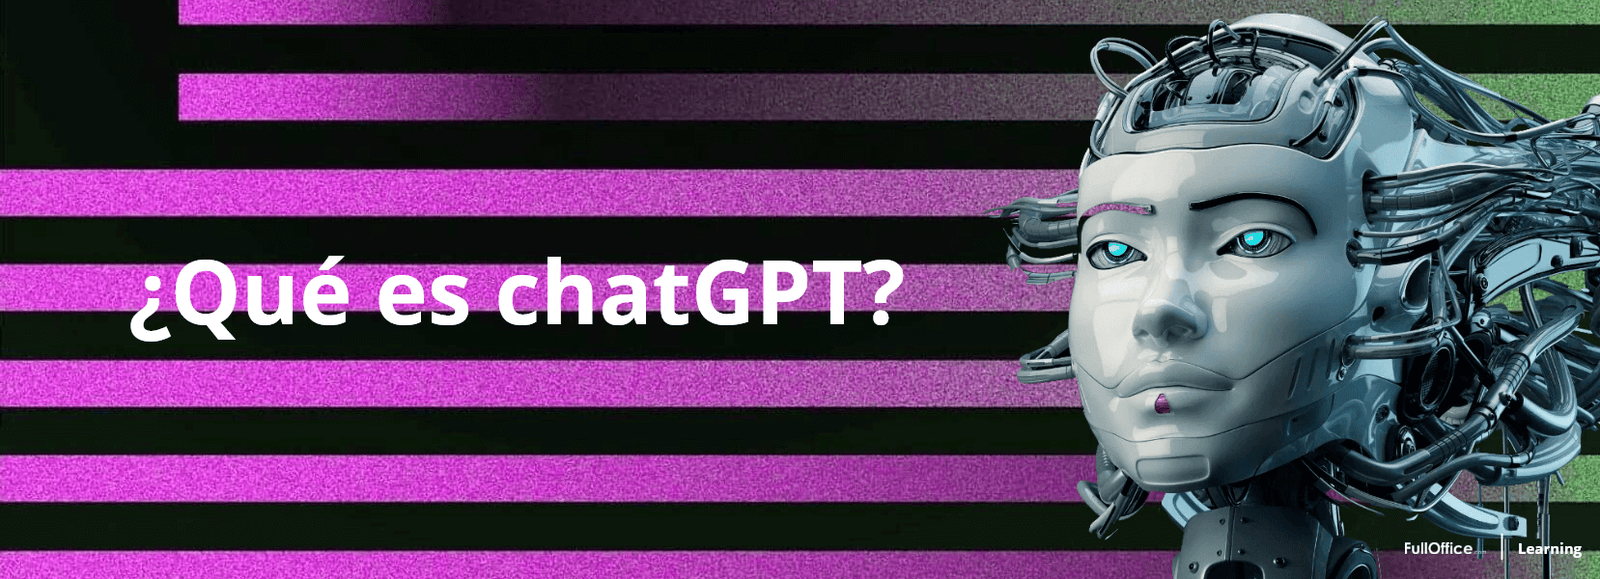 ¿Qué es ChatGPT y cómo funciona? FullOffice.com